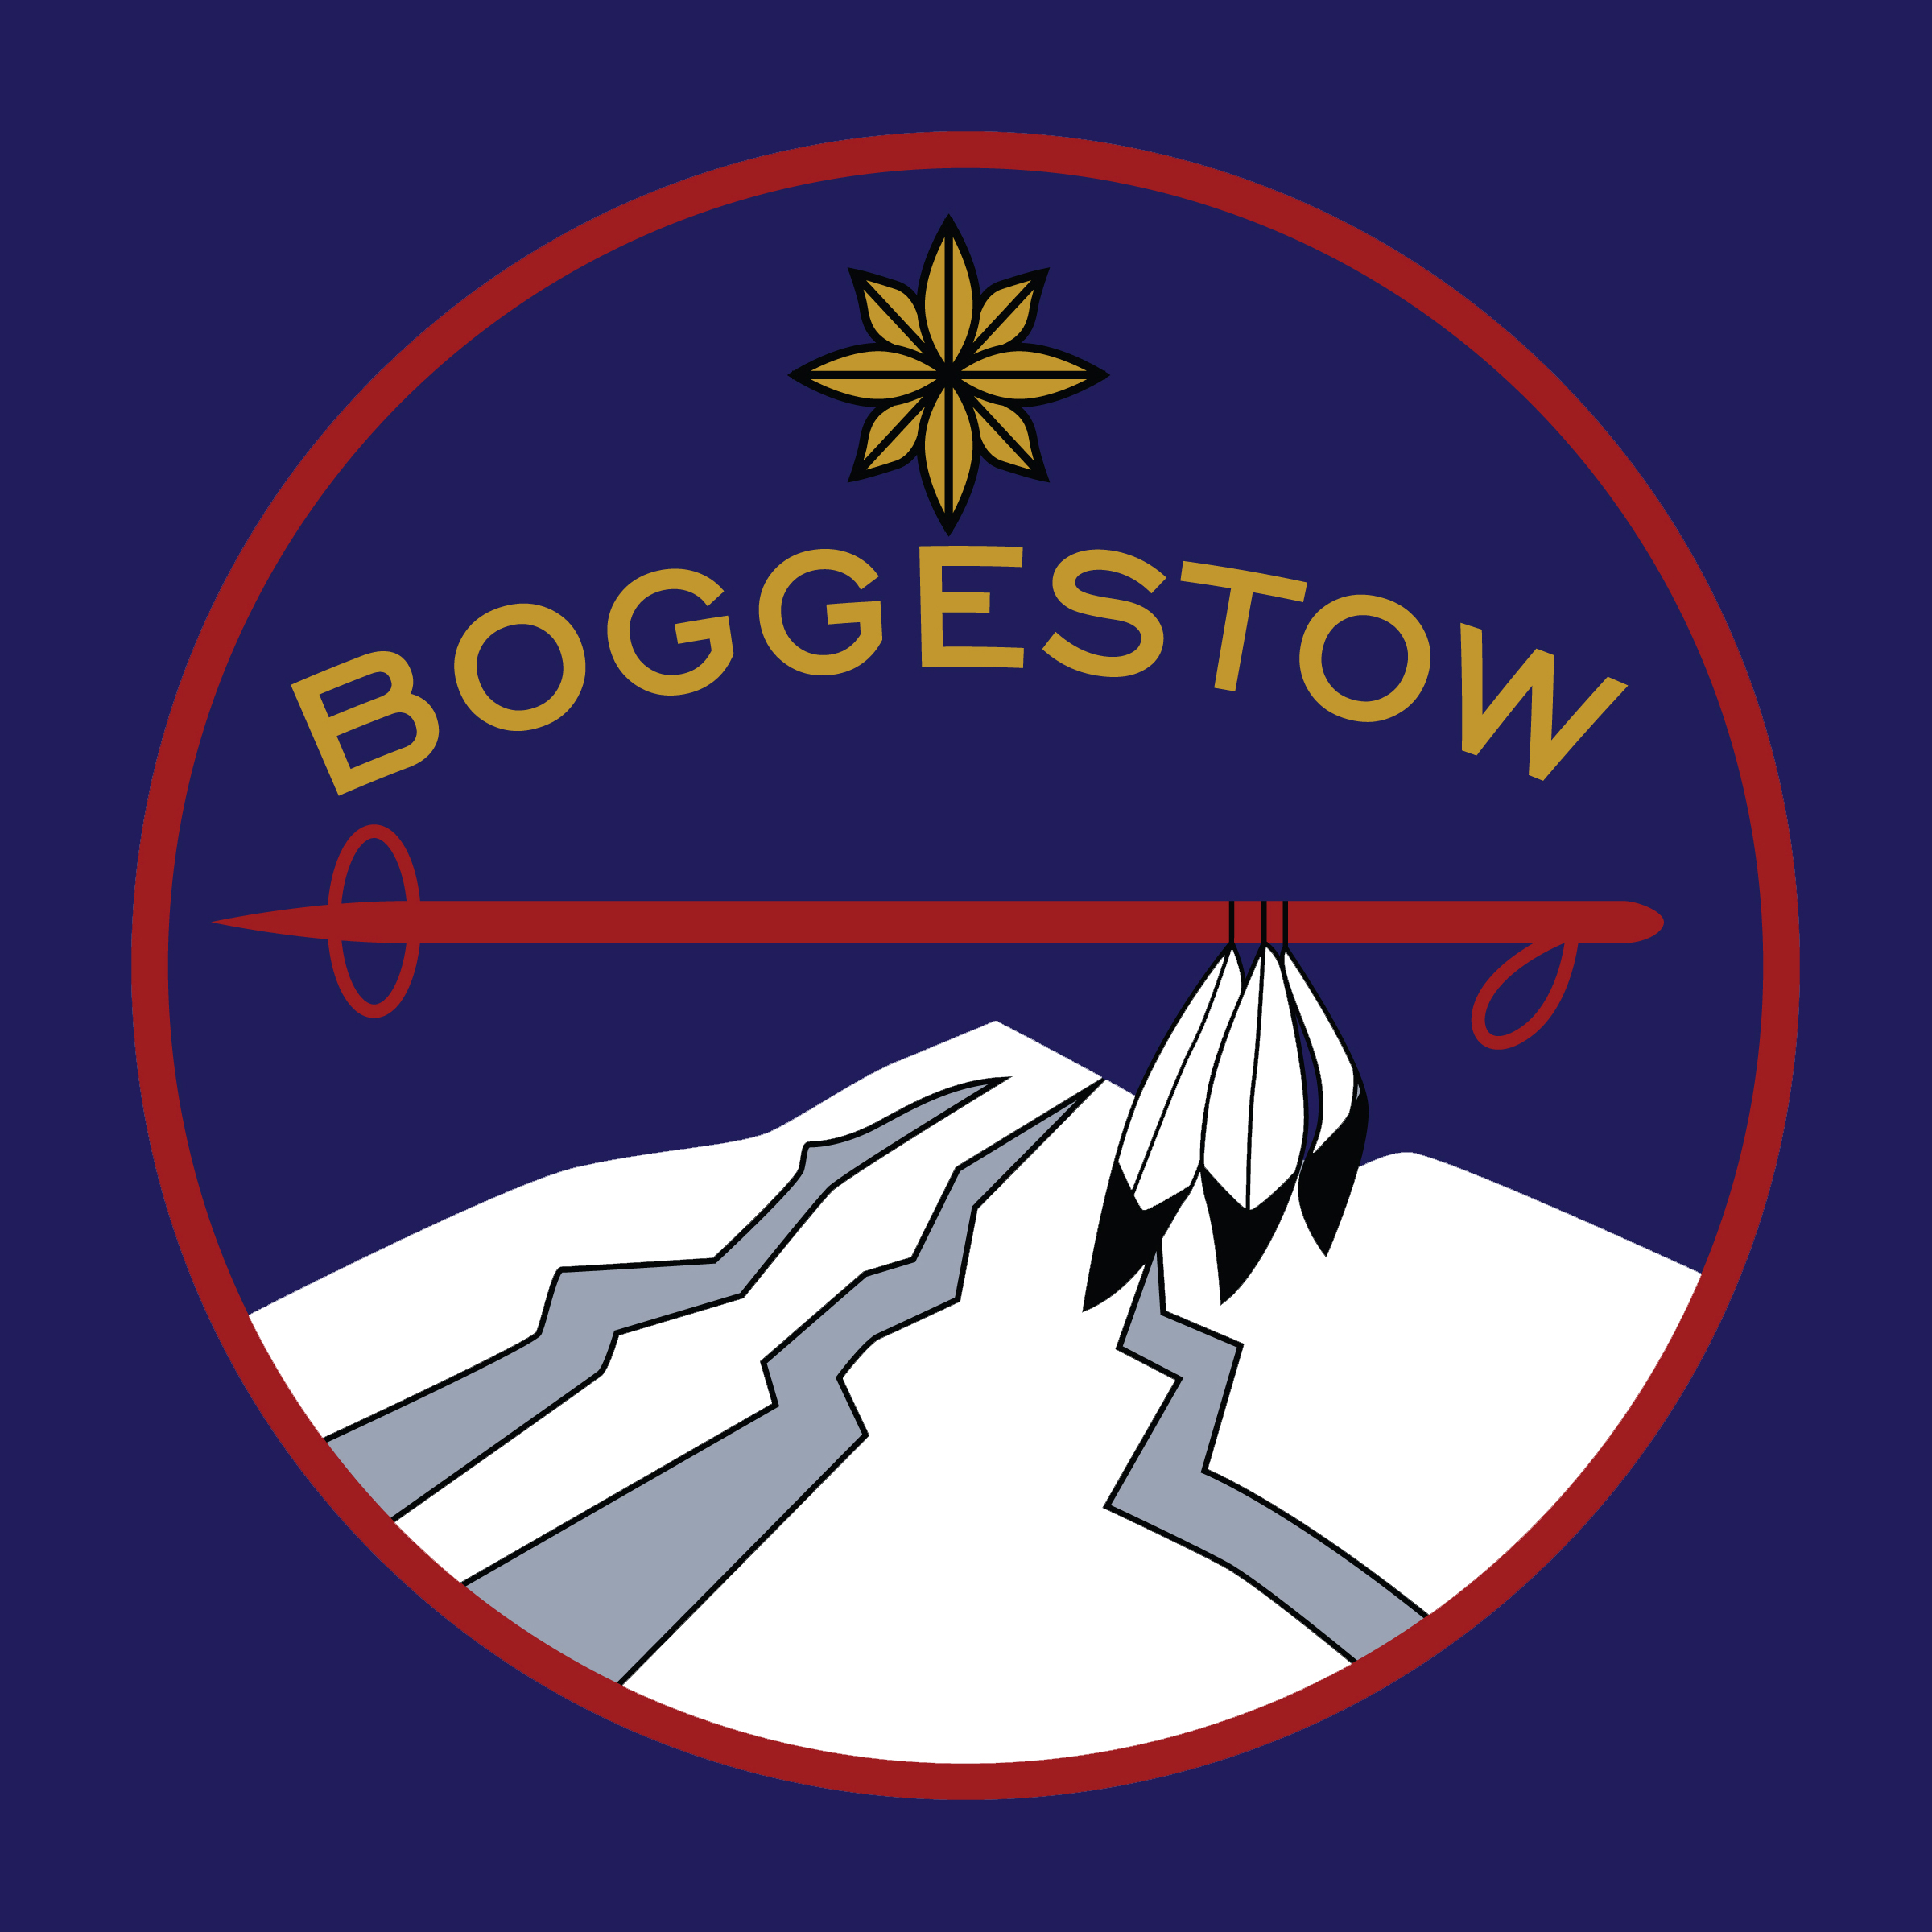 Boggestow Ski Club